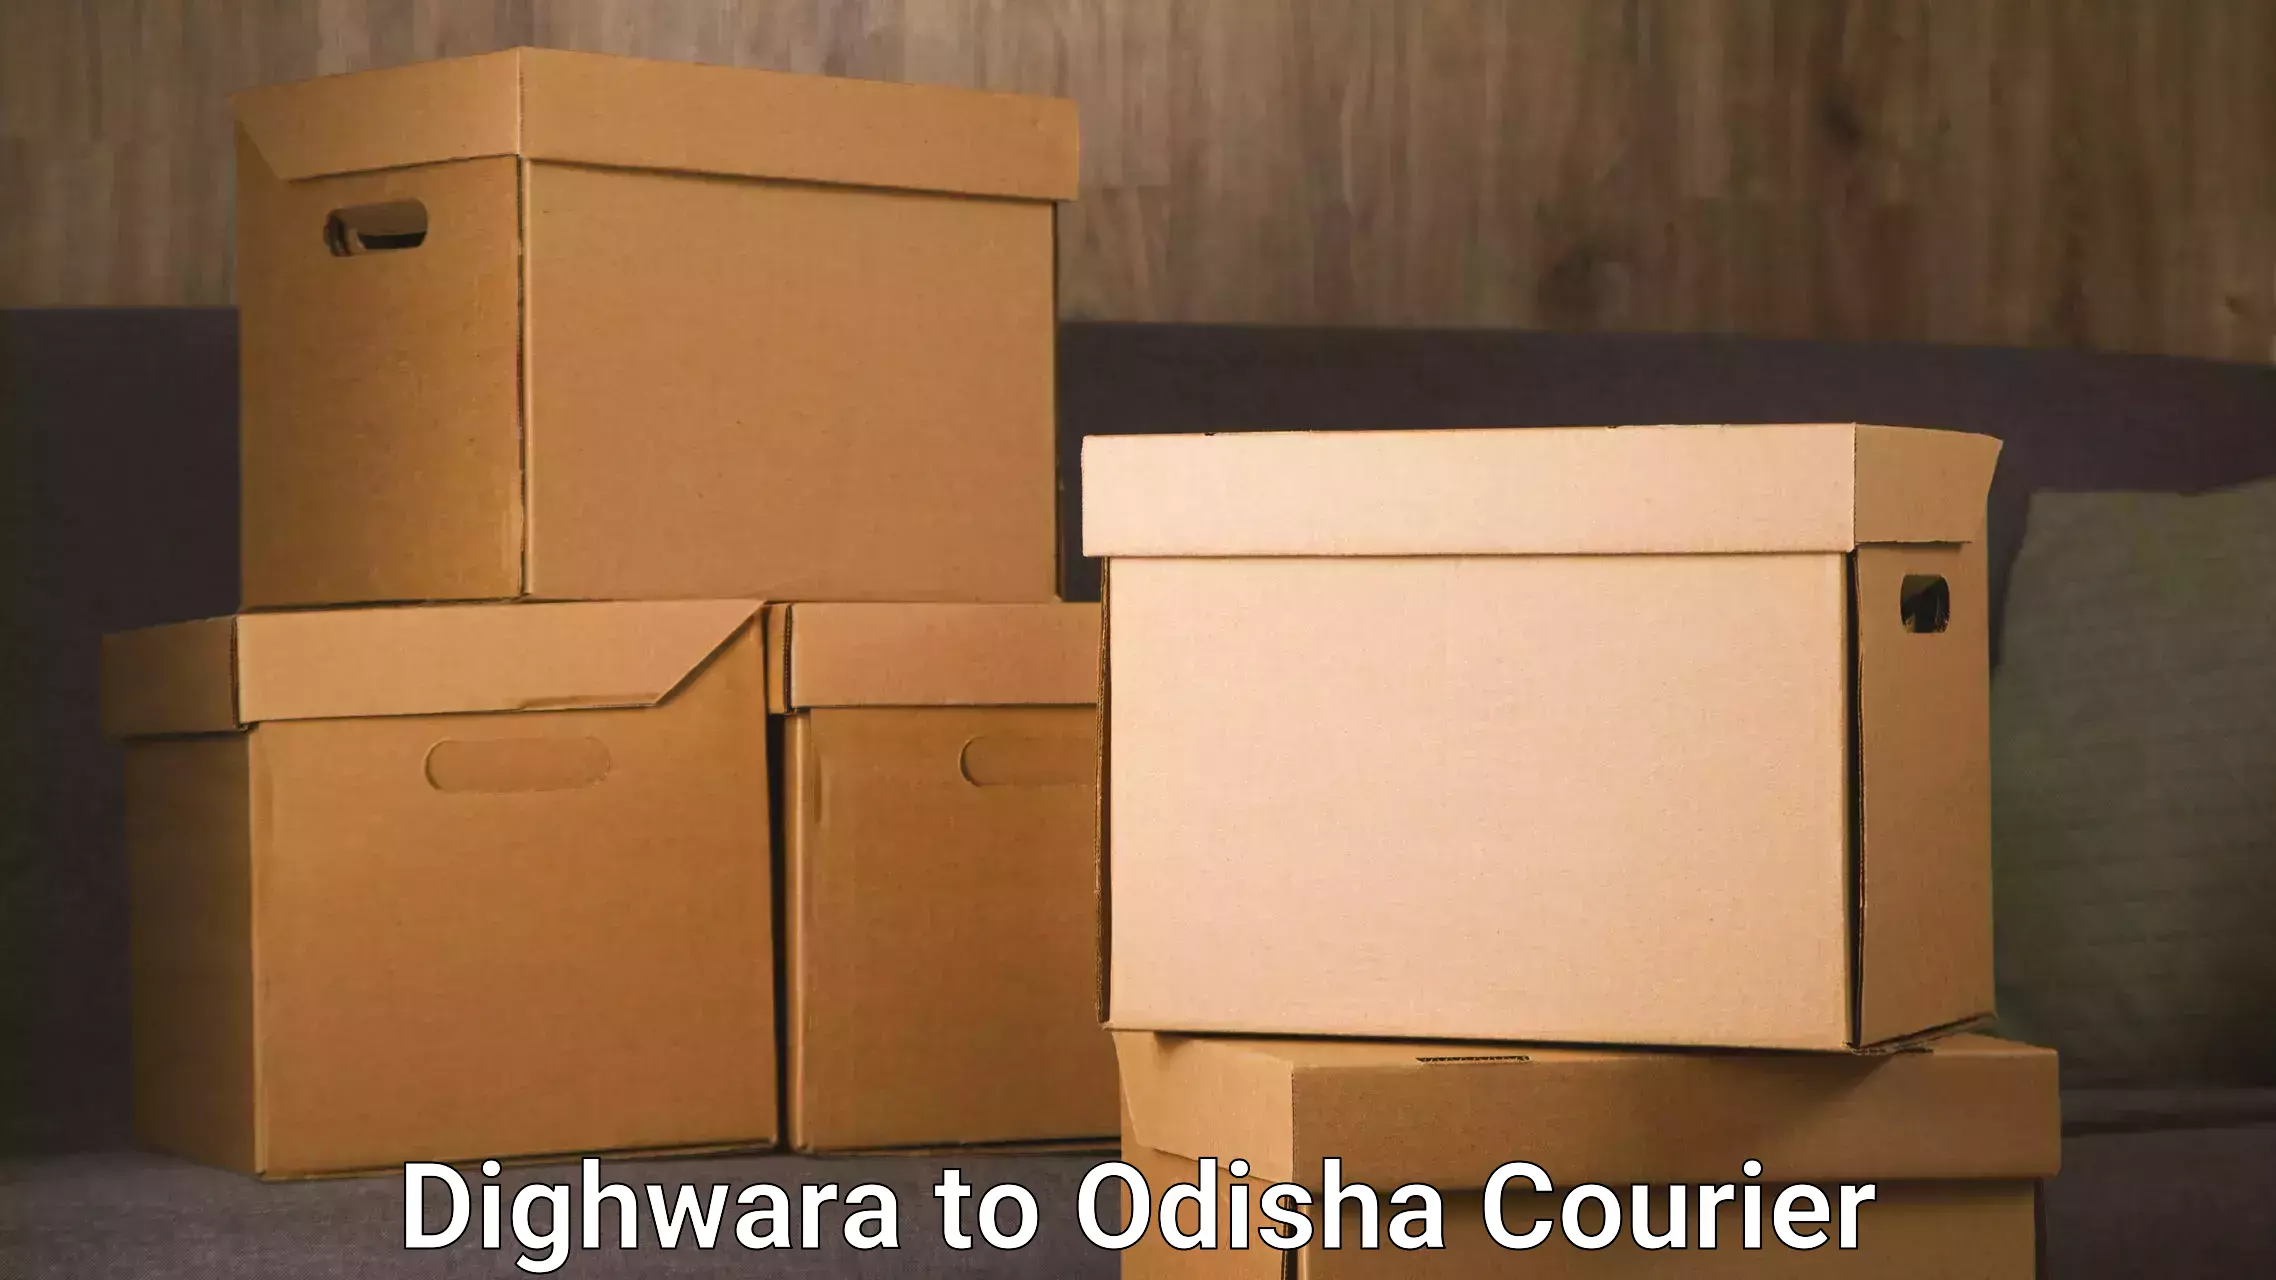 Furniture transport service Dighwara to Bangriposi